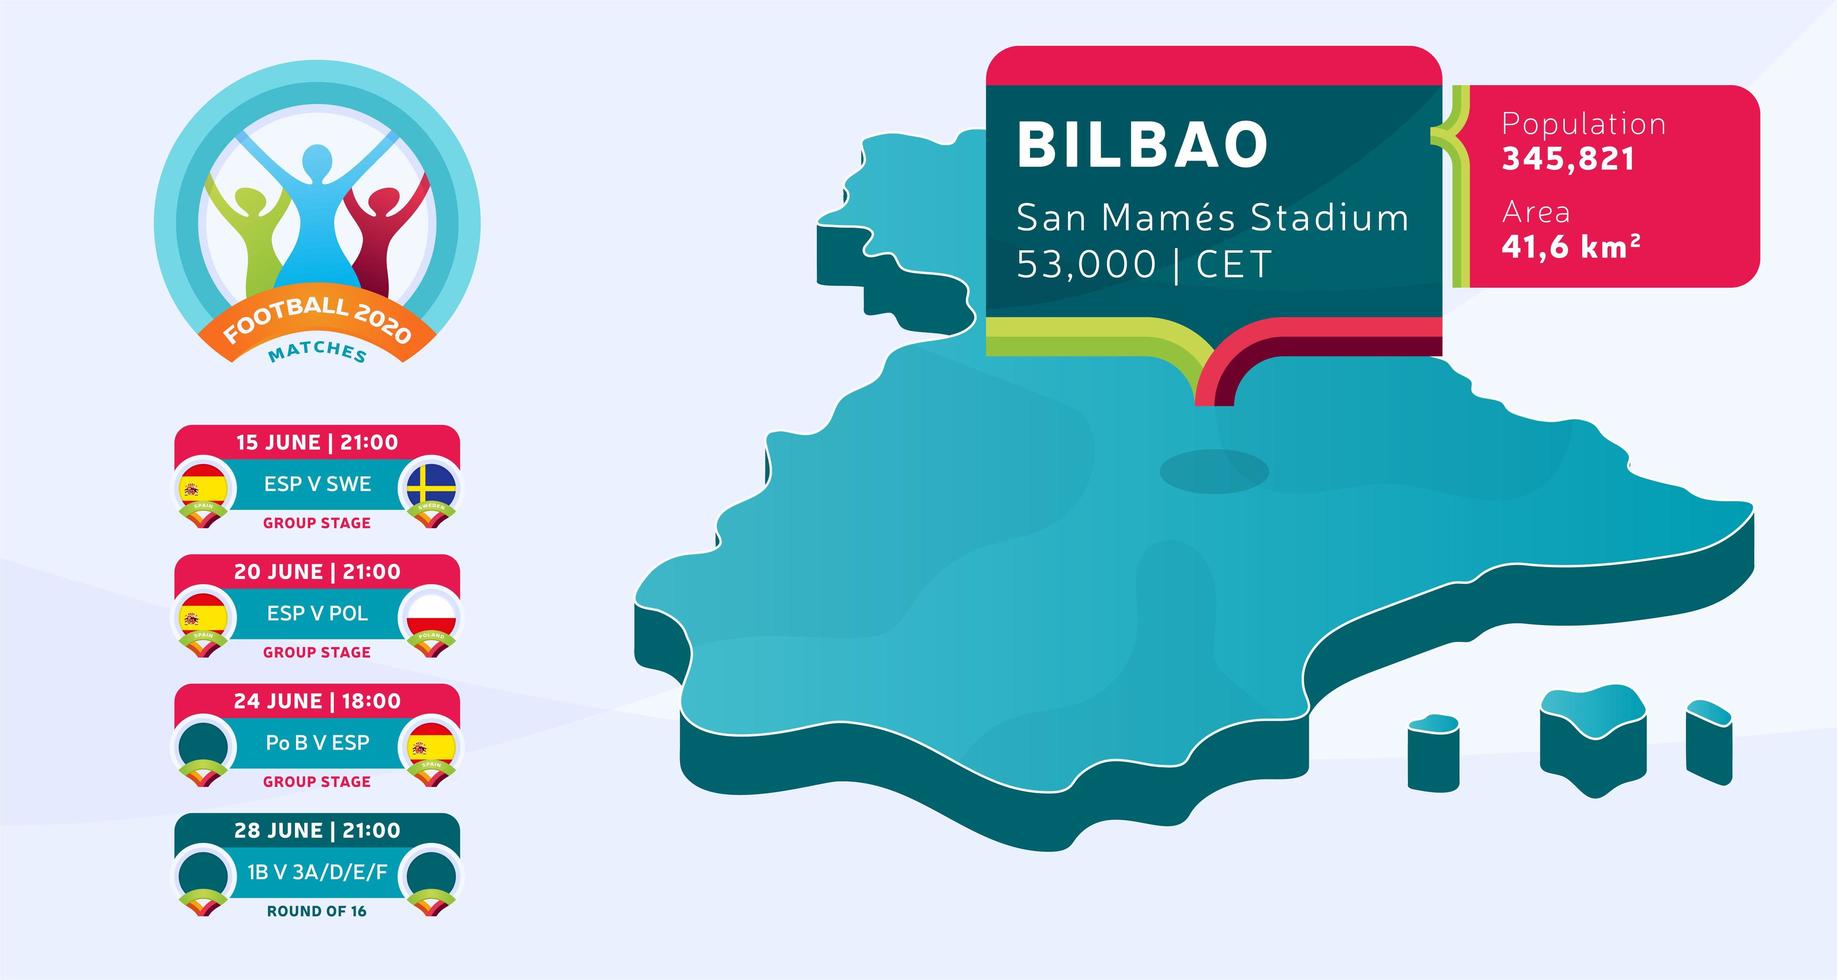 isometrisk spanien landskarta taggad i bilbao stadion som kommer att hållas fotbollsmatcher vektorillustration. fotboll 2020 turnering sista etappen infografik och land info vektor